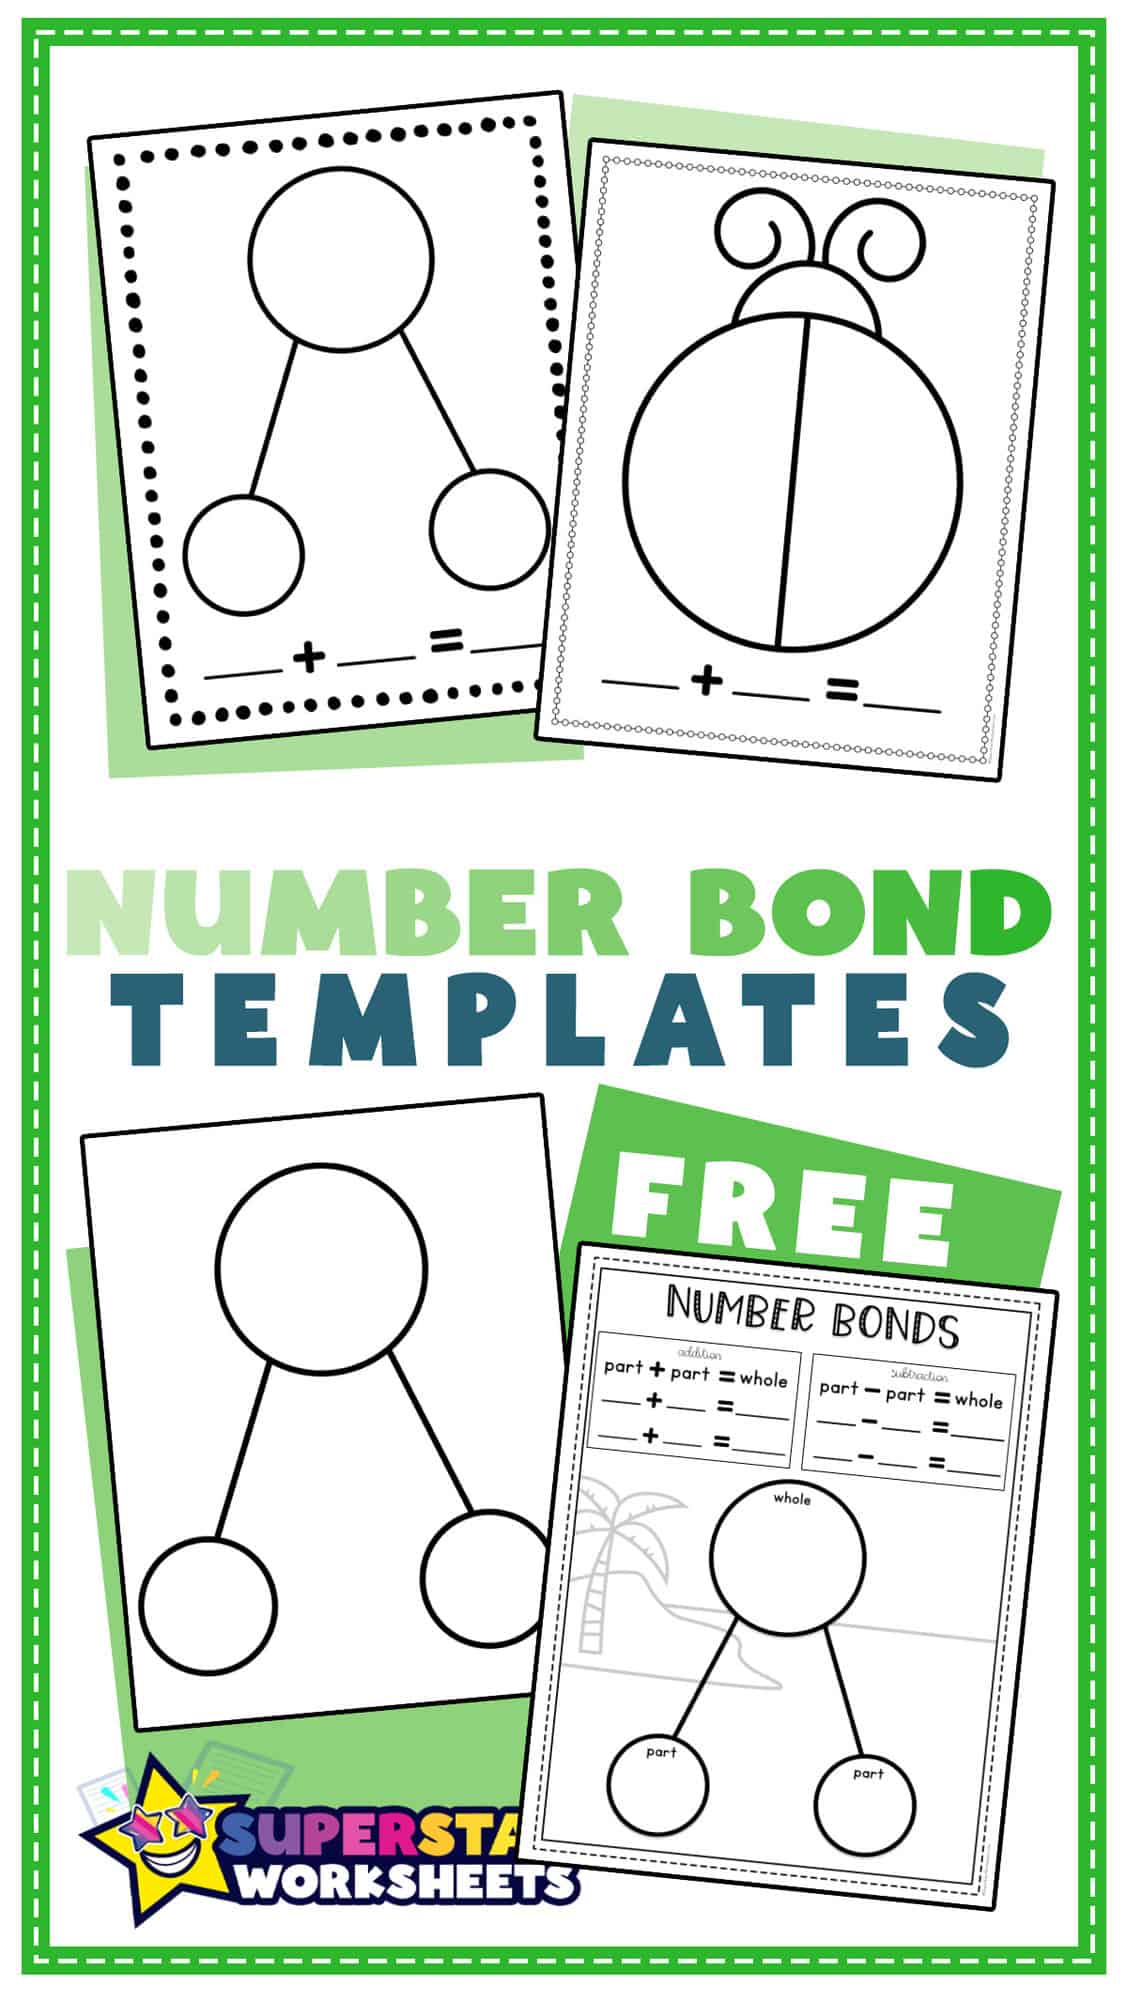 number-bond-template-superstar-worksheets